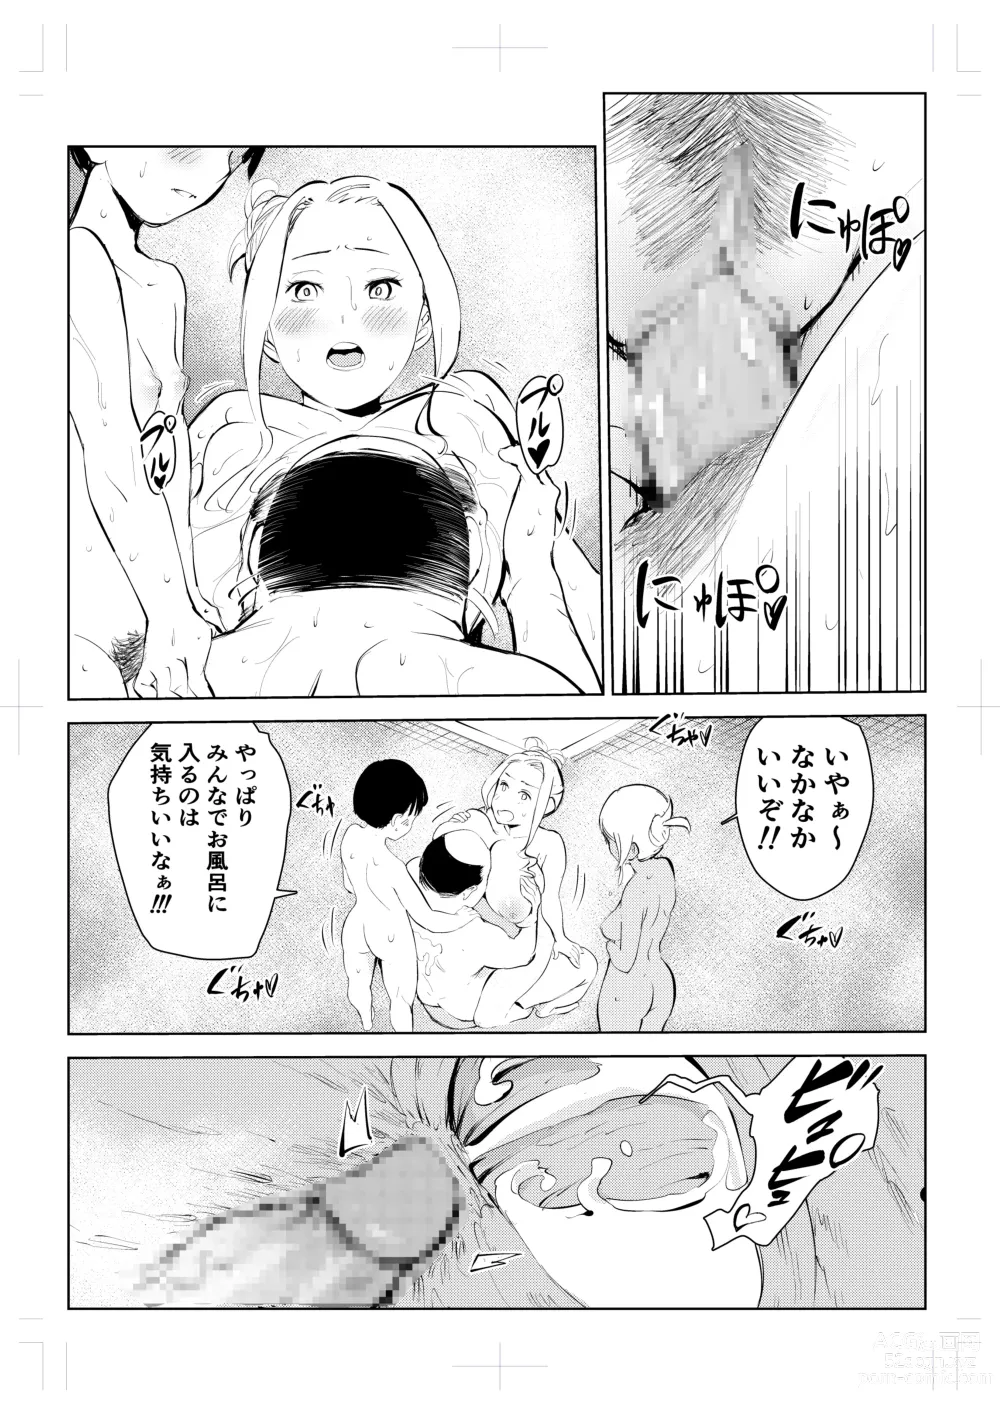 Page 72 of doujinshi 40-sai no Mahoutsukai 4